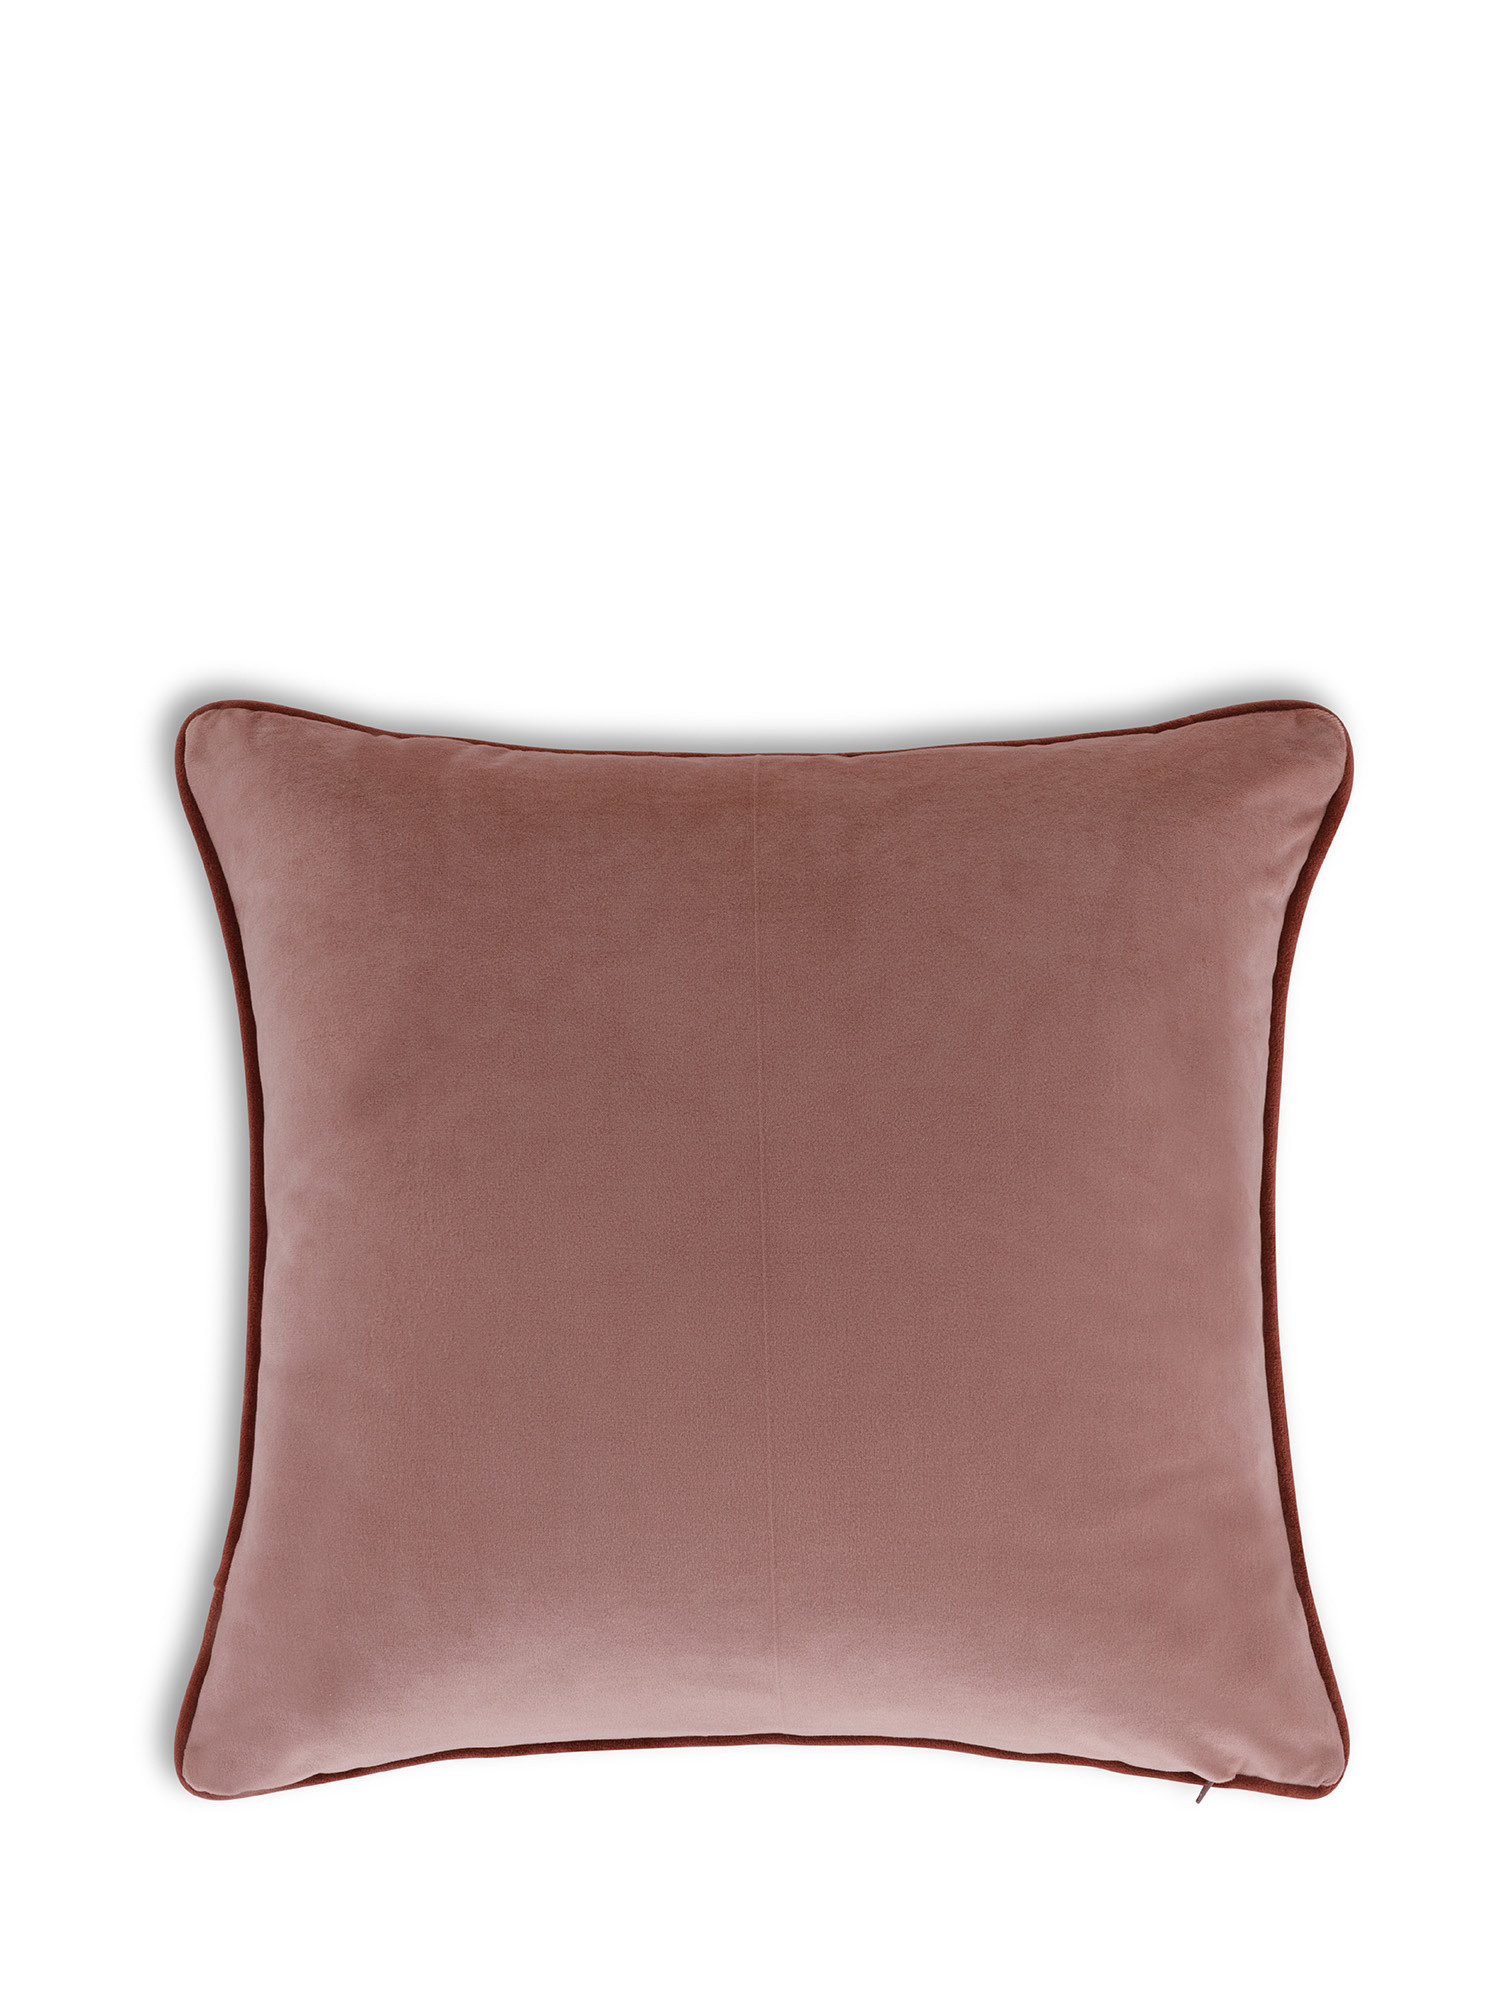 Cuscino in velluto con piping applicato sul bordo 45x45 cm, Rosa, large image number 1